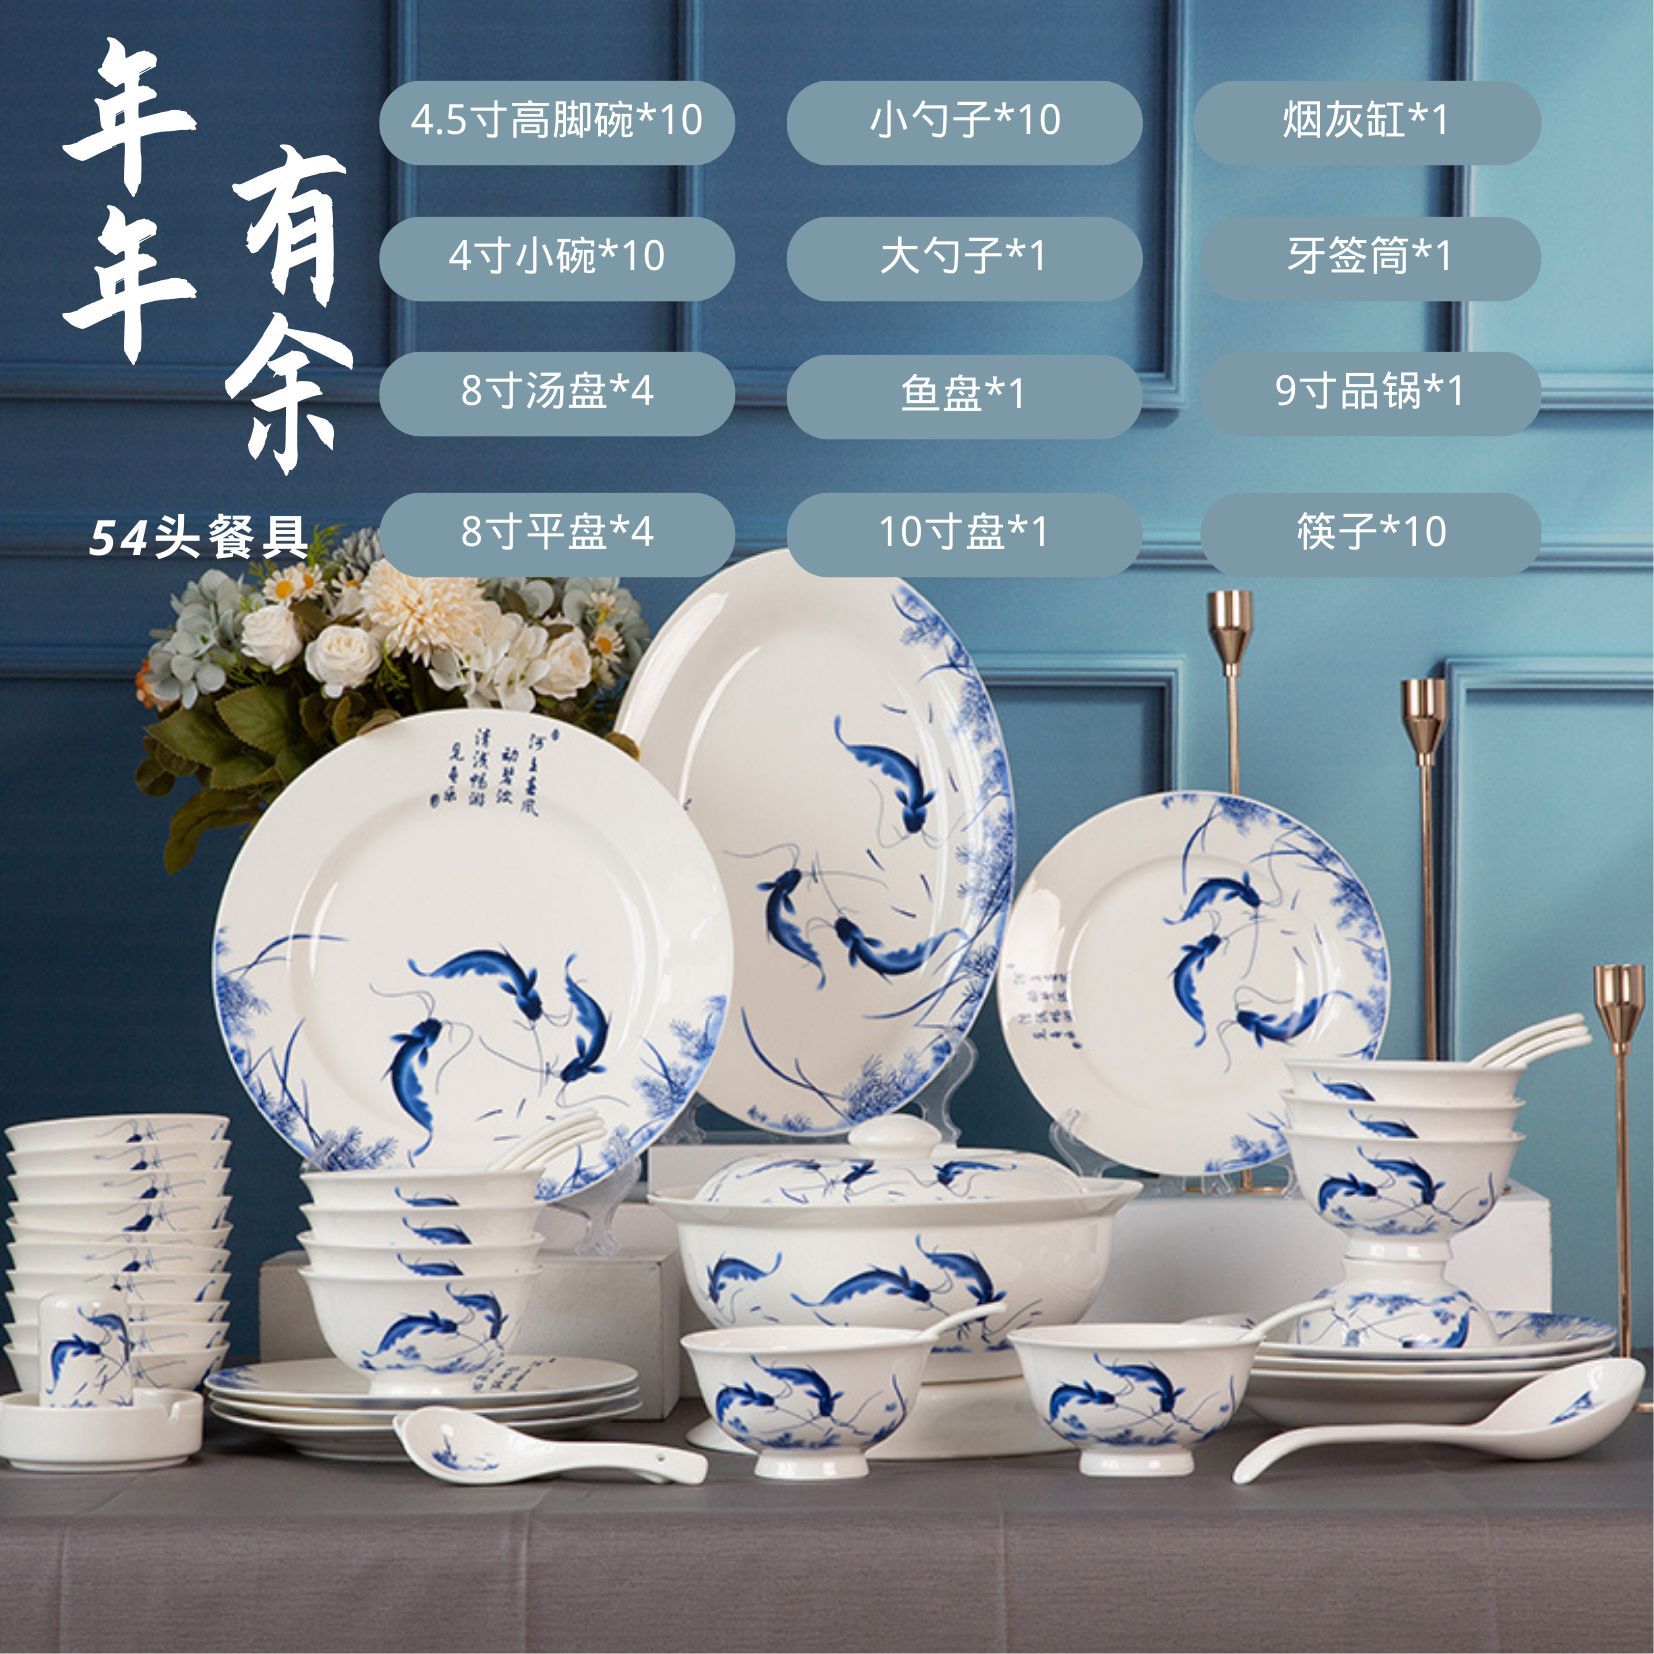 54头骨瓷餐具套装 新中式青花瓷碗碟整套批发家用饭碗筷乔迁礼品